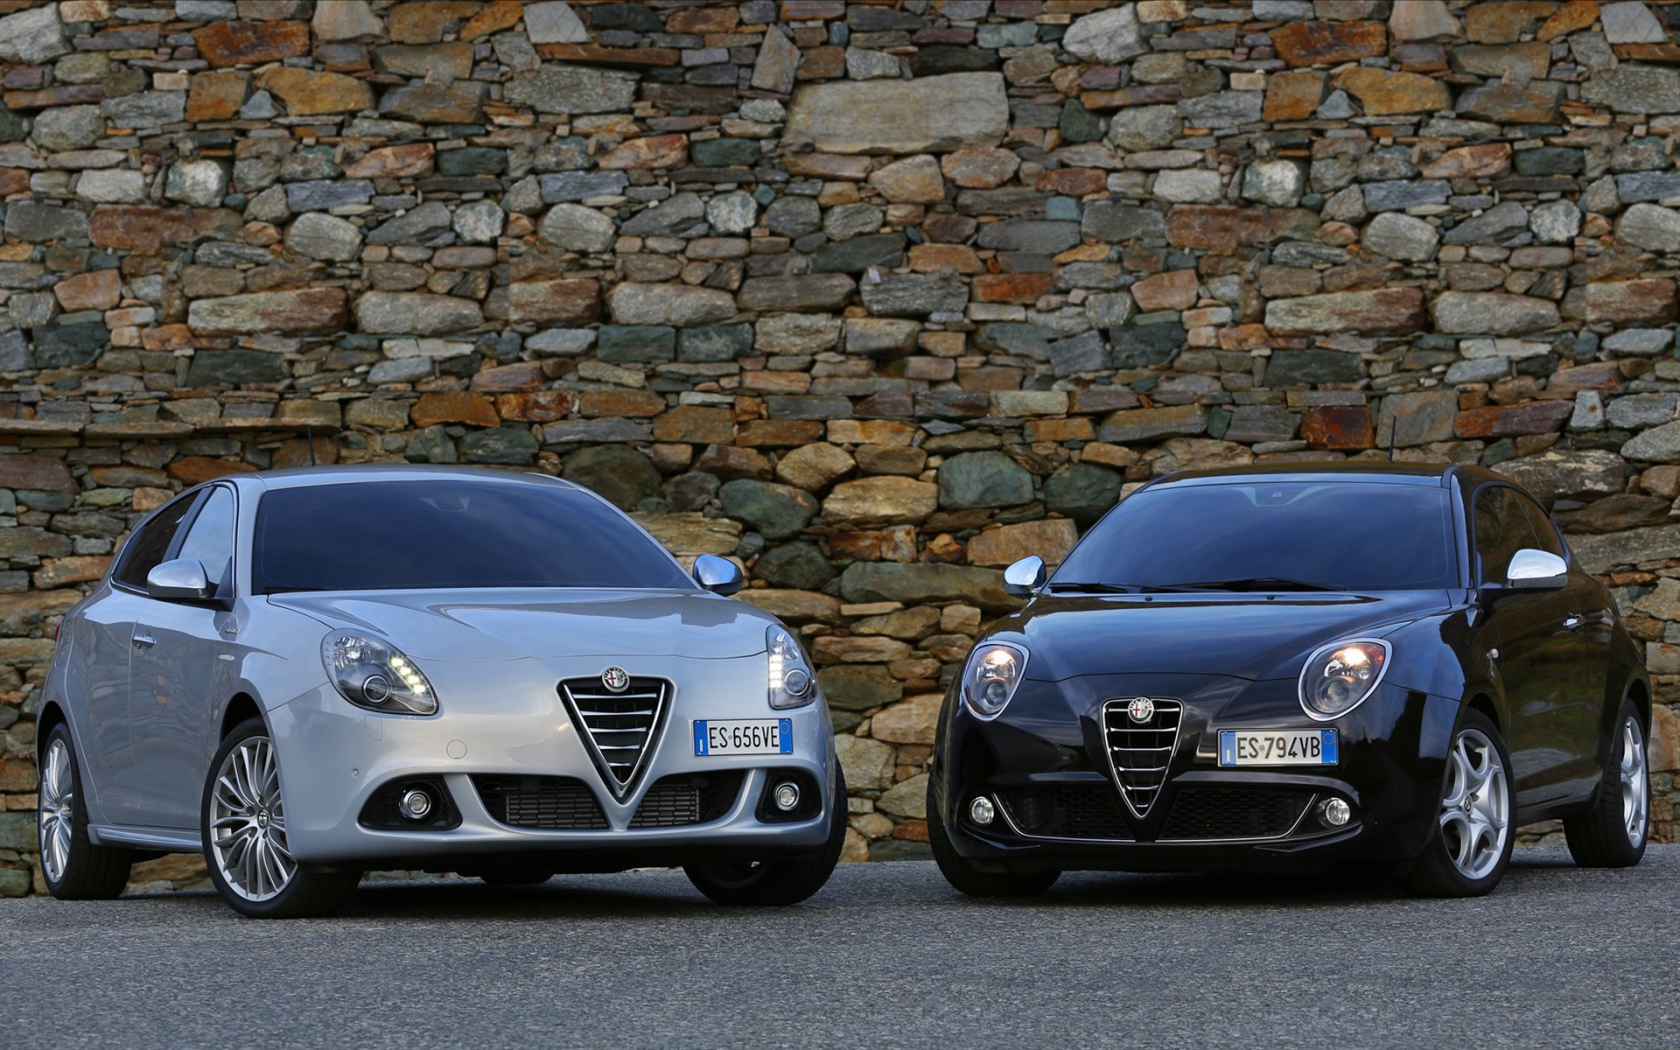 Дизайн автомобиля Alfa Romeo giulietta 2014